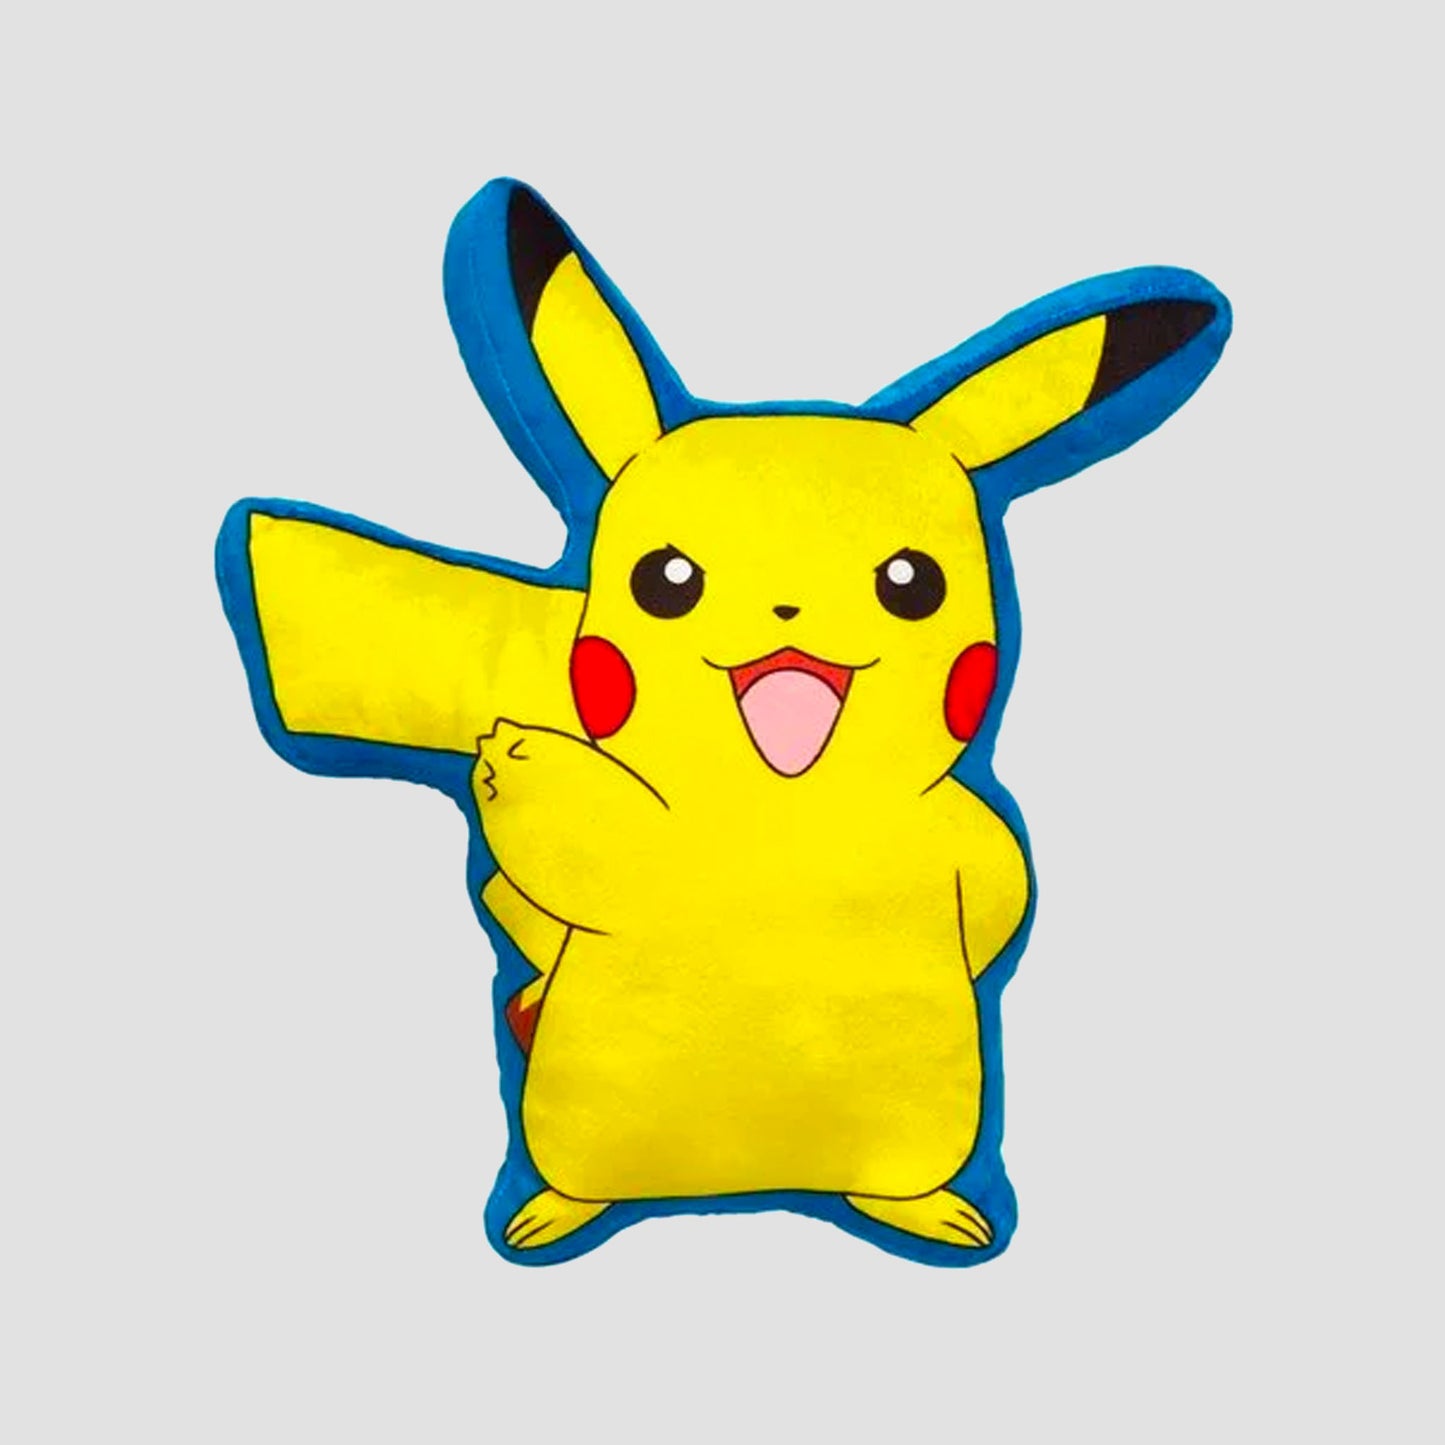 Pikachu (Pokemon) Plush and Throw Blanket